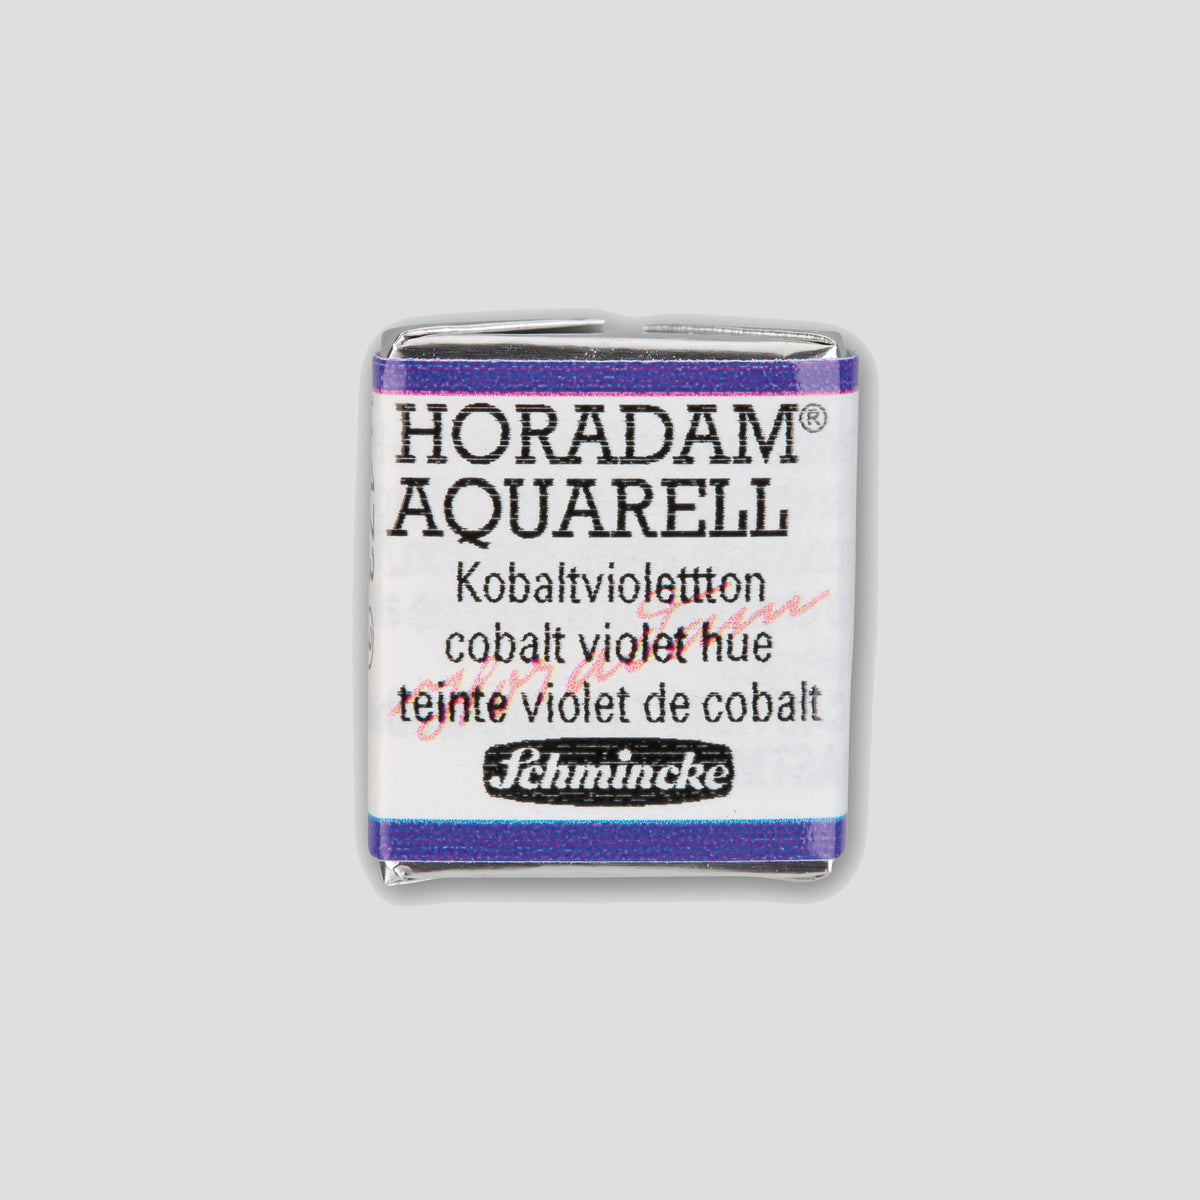 Schmincke Horadam® Halbpfanne Kobaltviolett